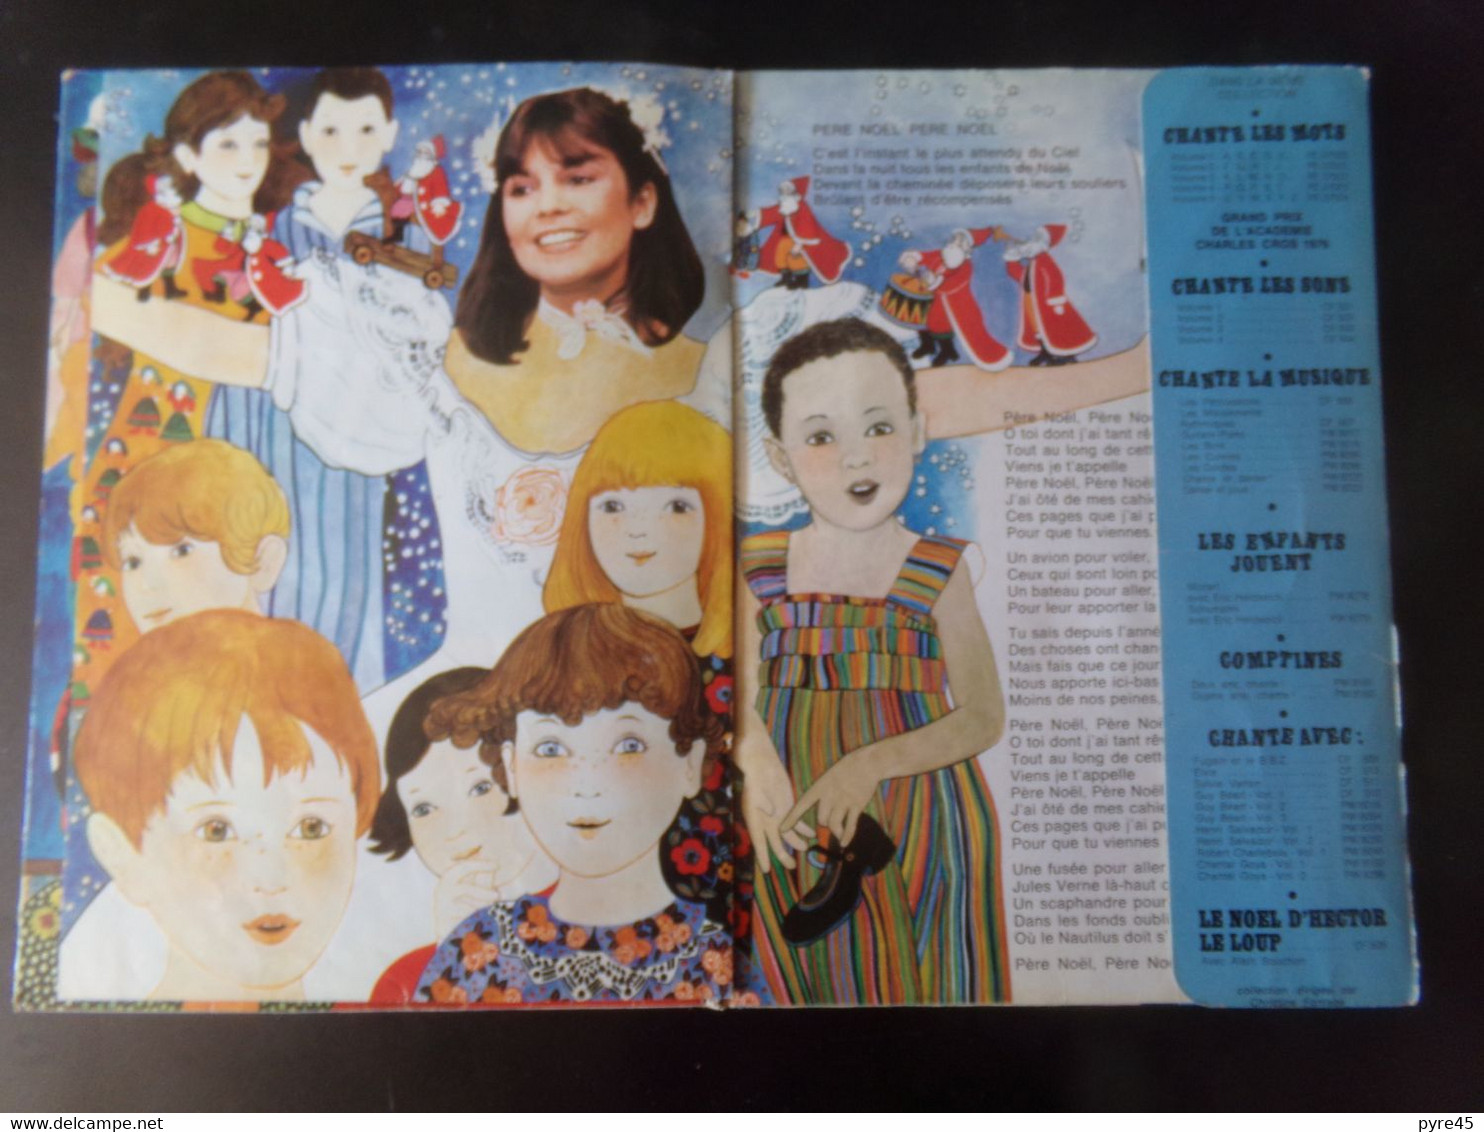 Livre disque " Chante avec Chantal Goya " La poupée Riri, Fifi, Loulou...